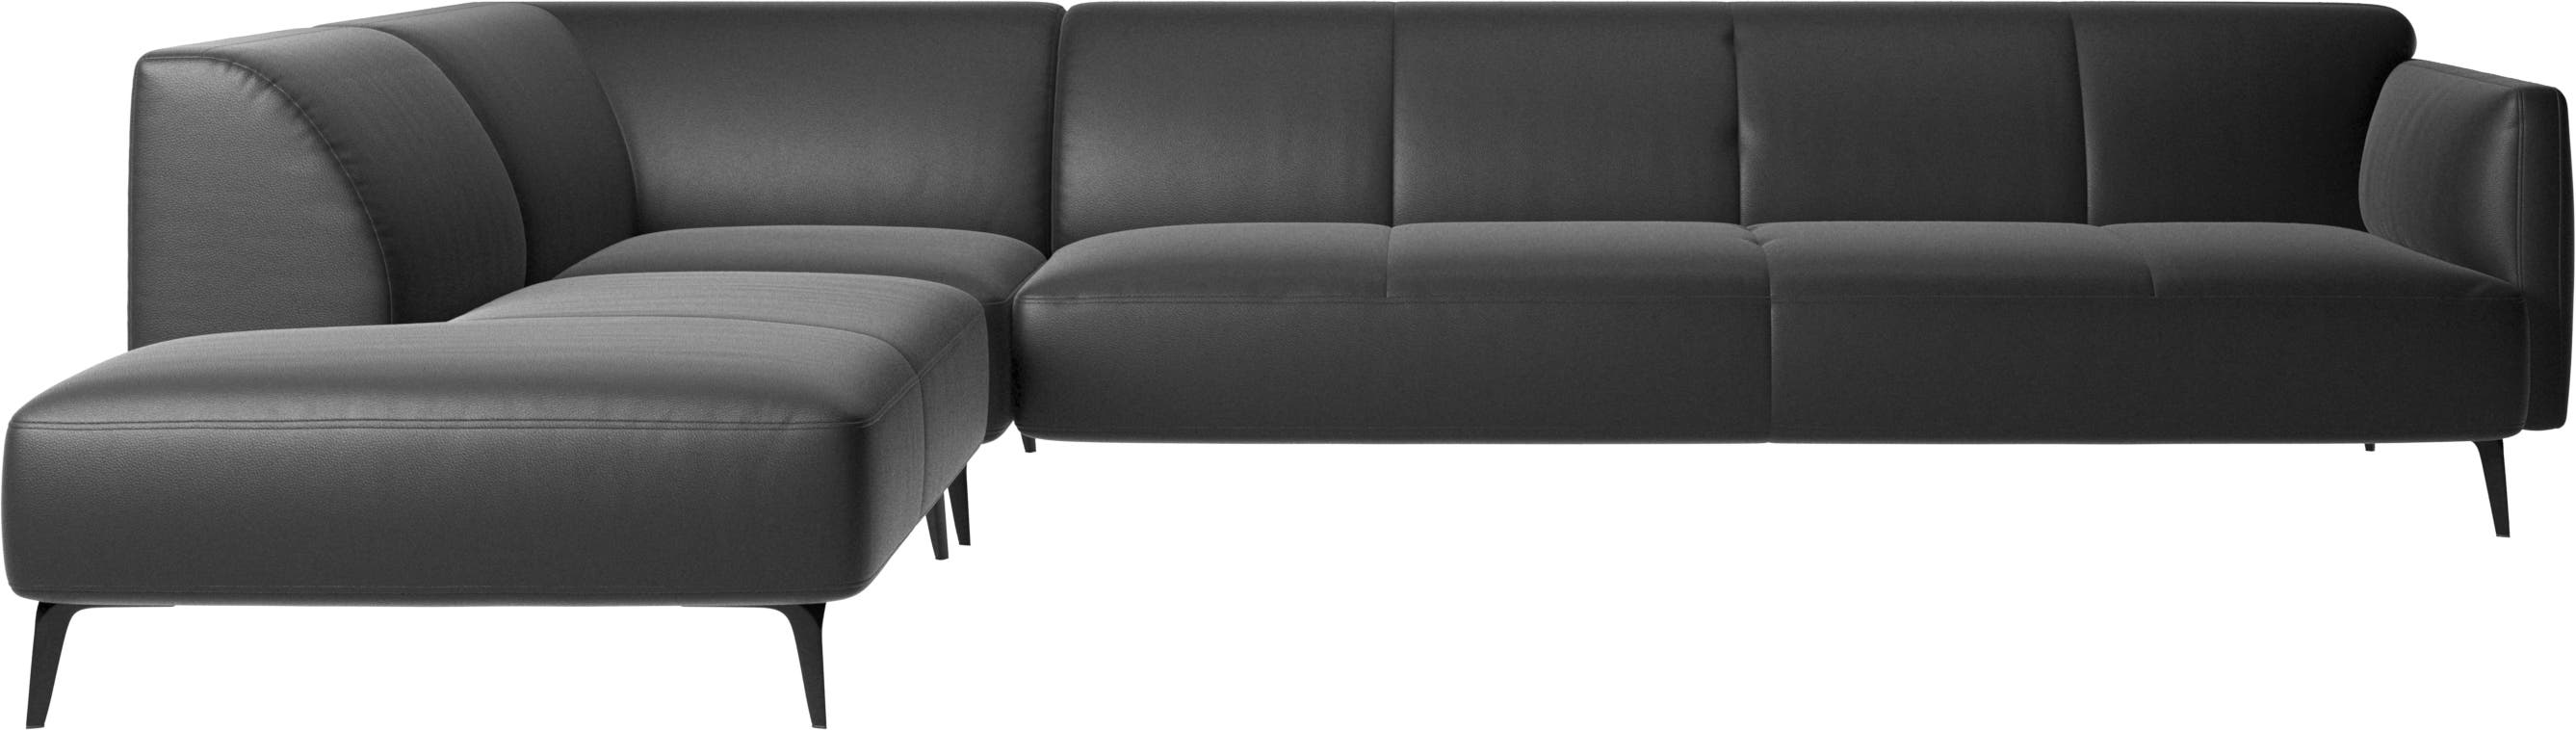 Γωνιακός καναπές Modena με μονάδα lounging